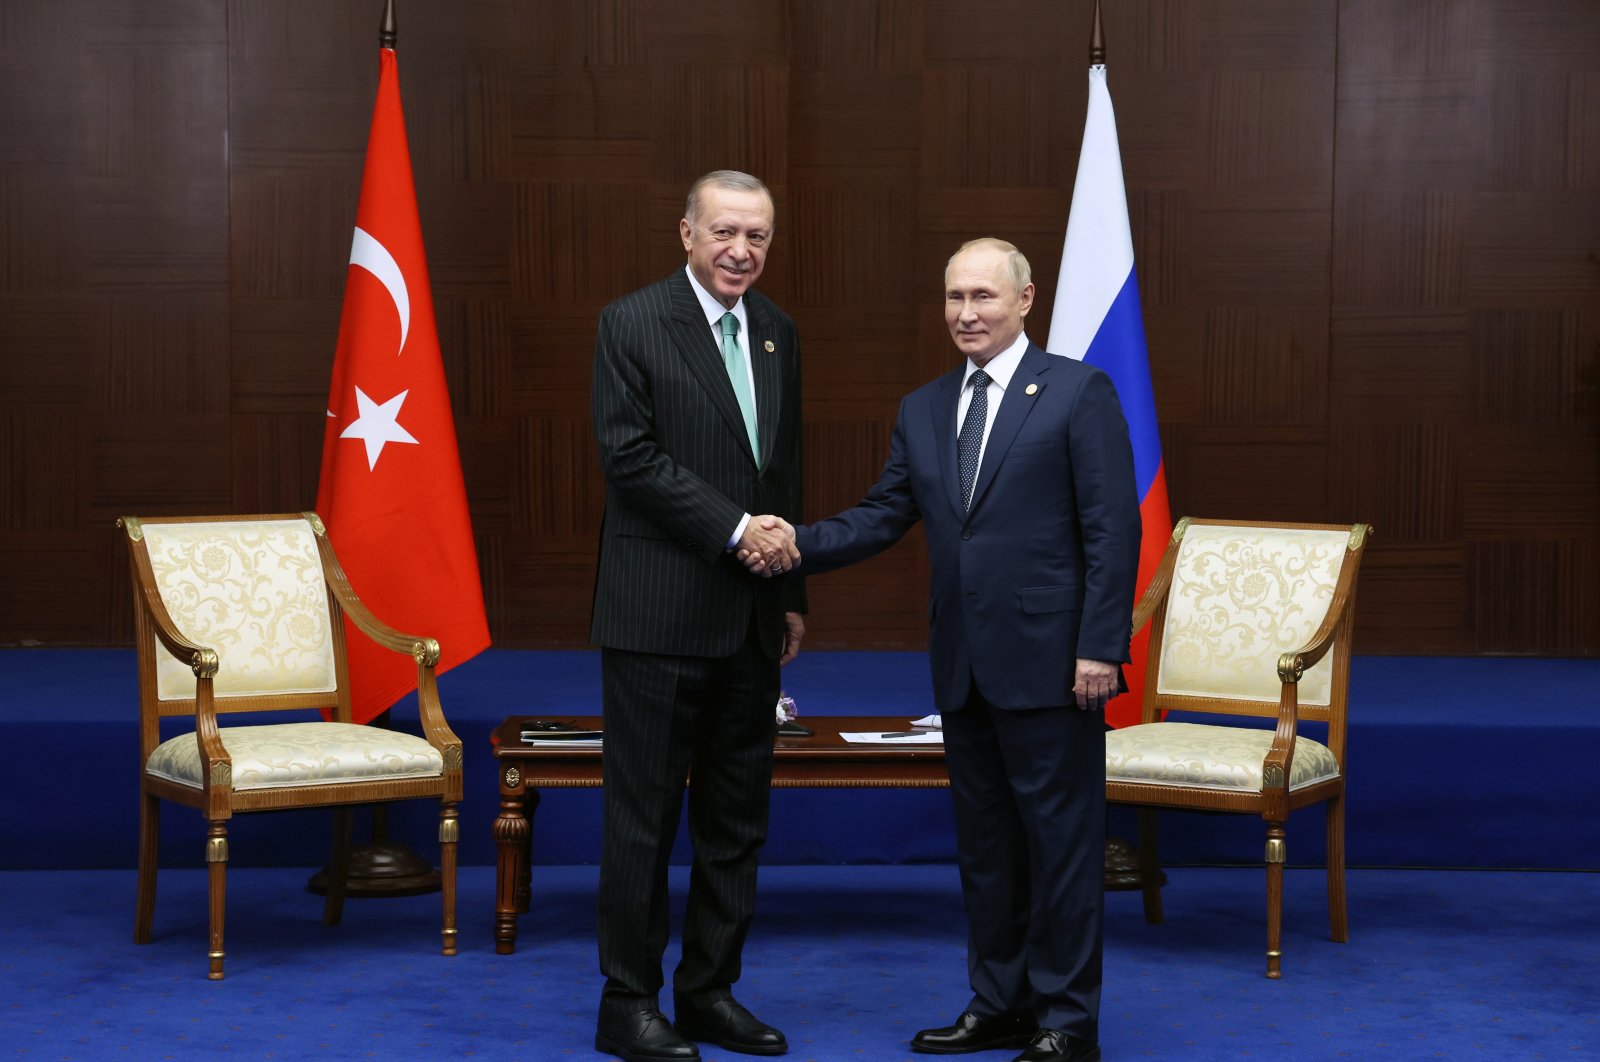 Erdoğan departs for Russia to meet Putin in bid to unlock grain deal